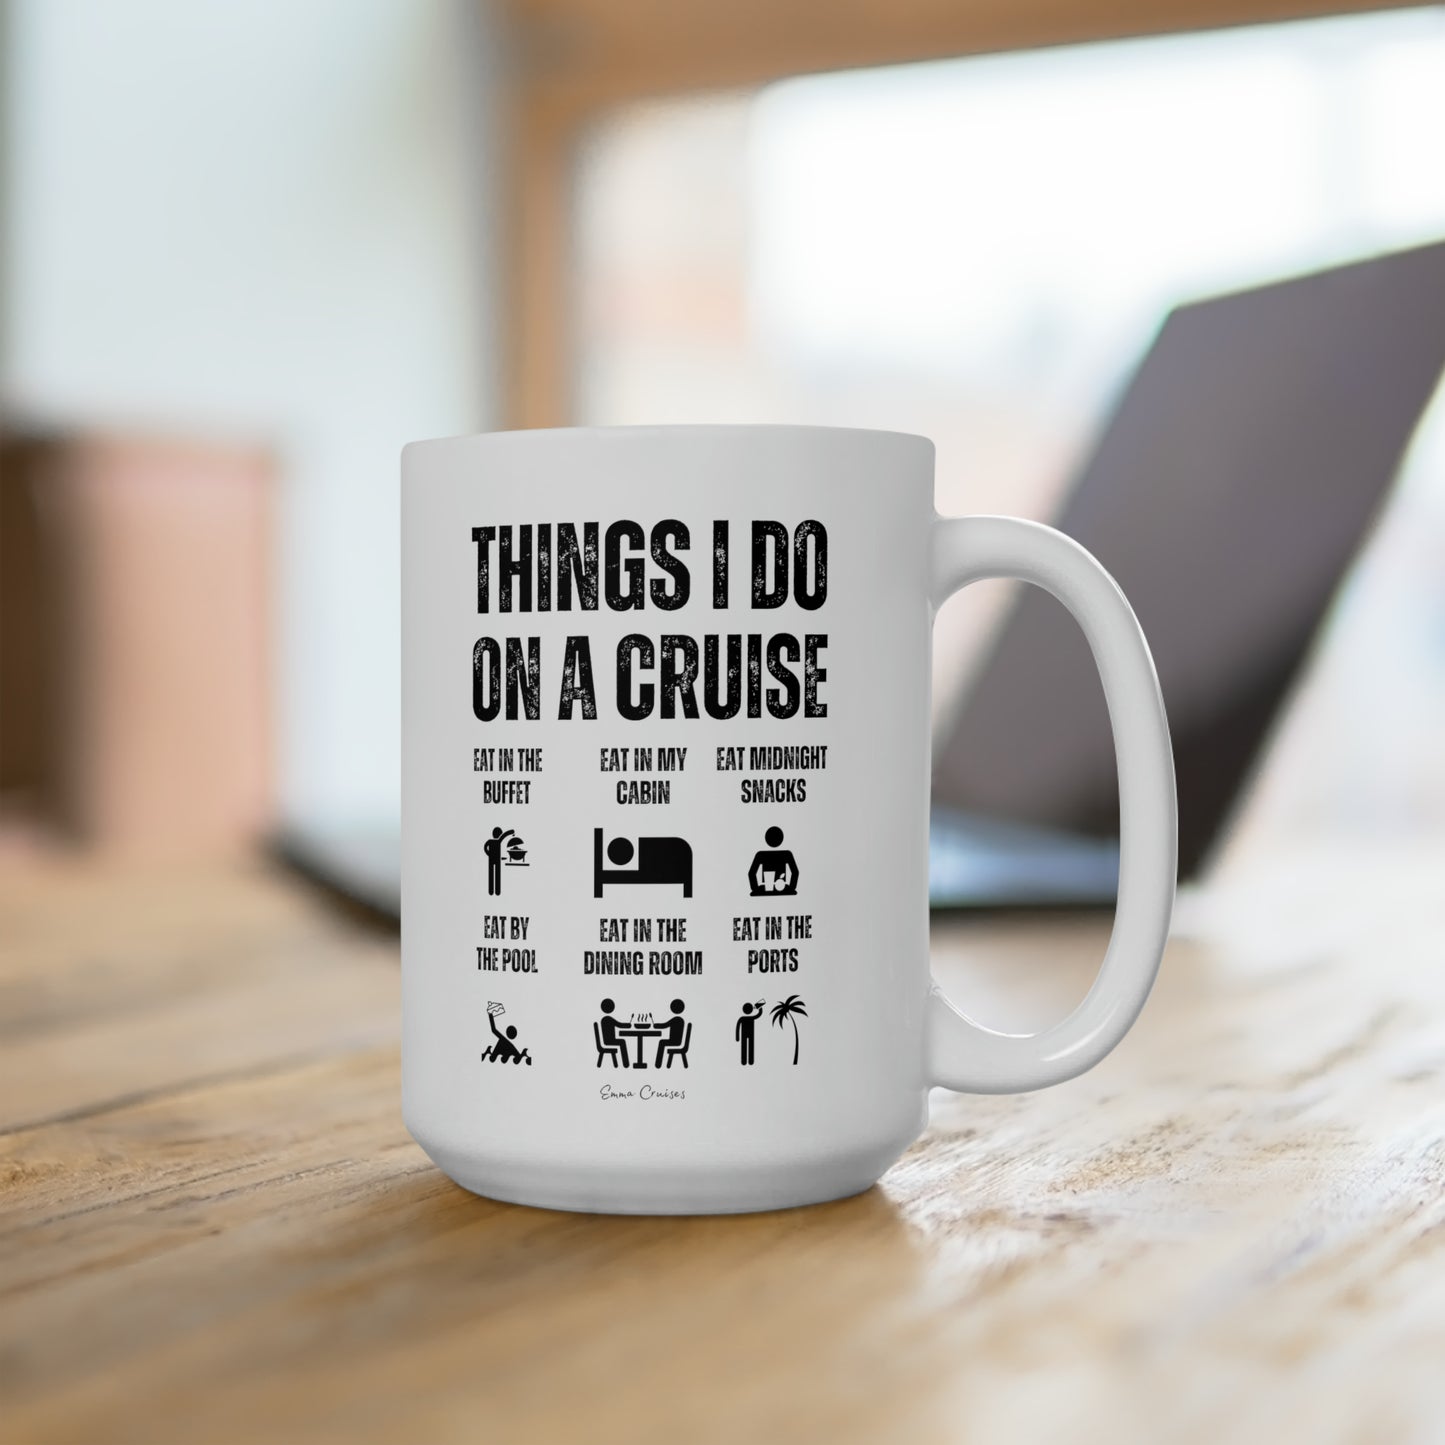 Things I Do on a Cruise - Ceramic Mug